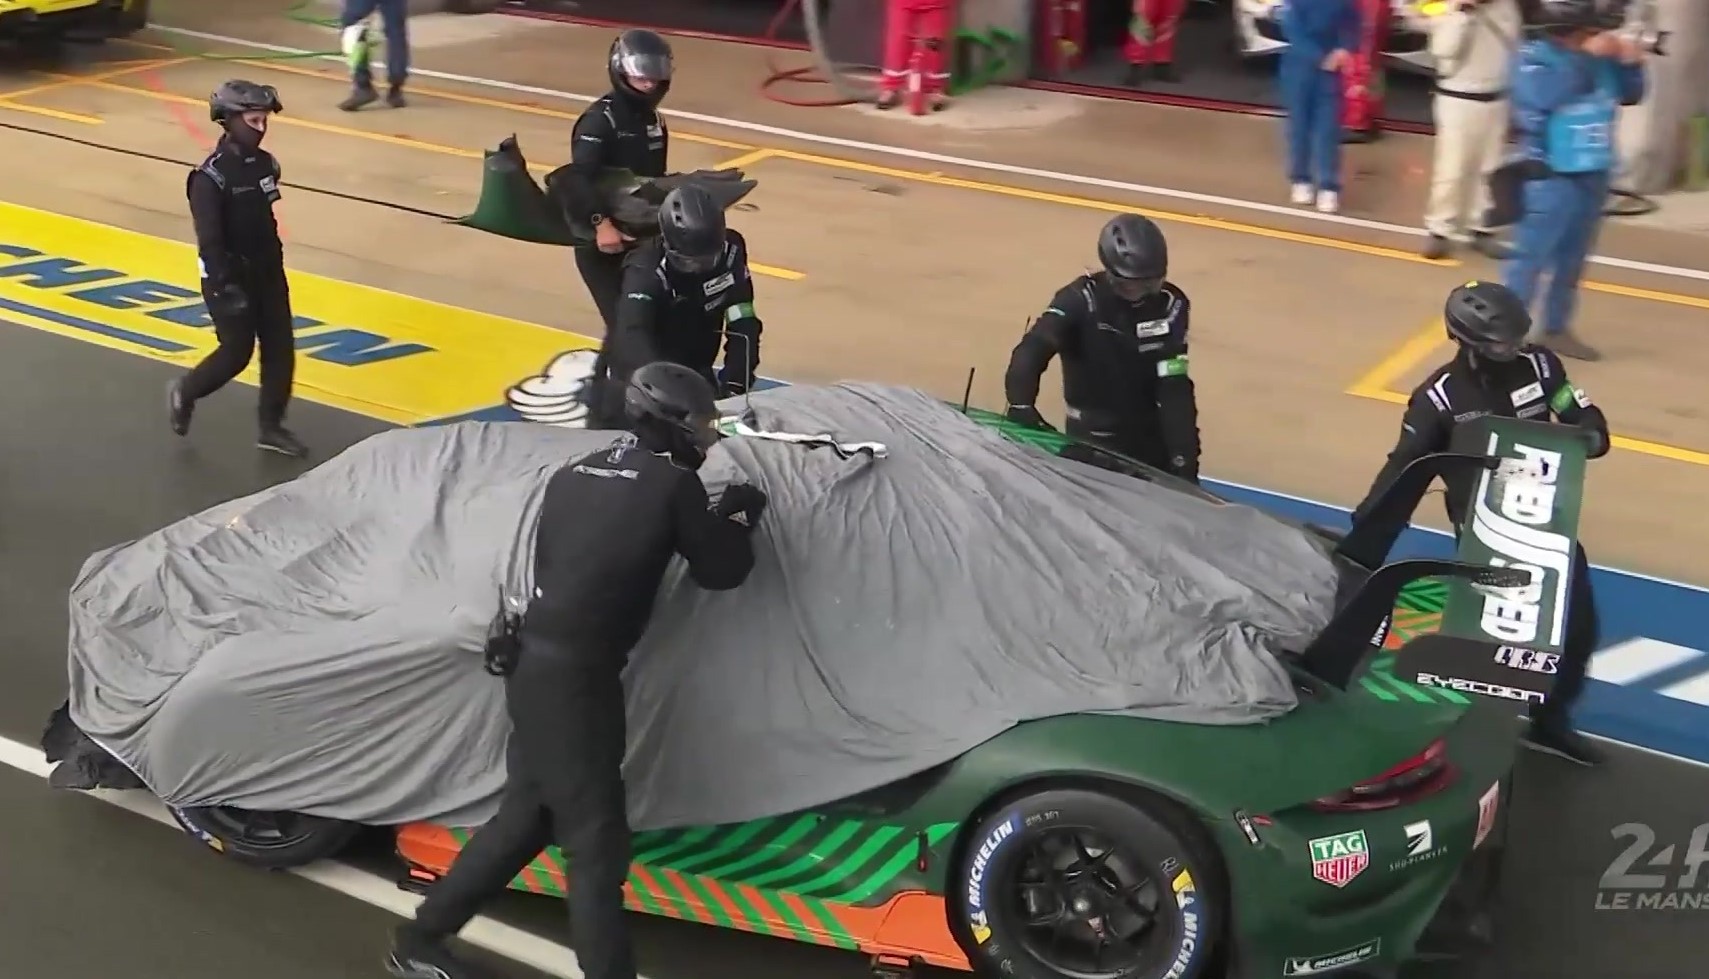 Michael Fassbender crashes after making Le Mans debut